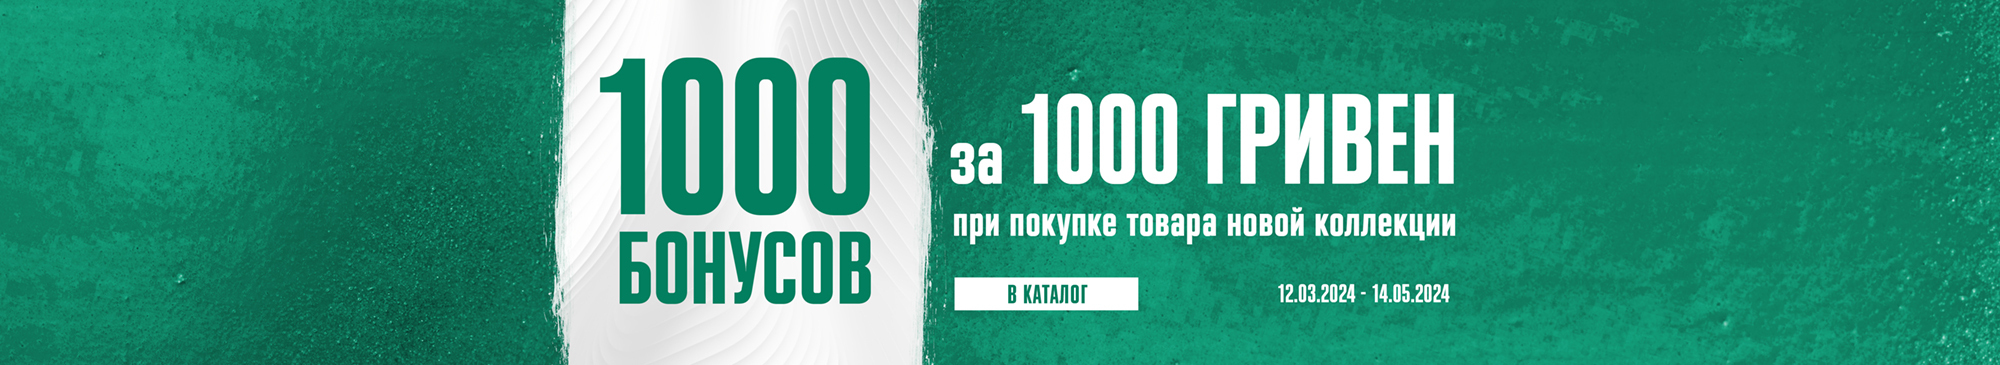 1000 Бонусов за 1000 гривен